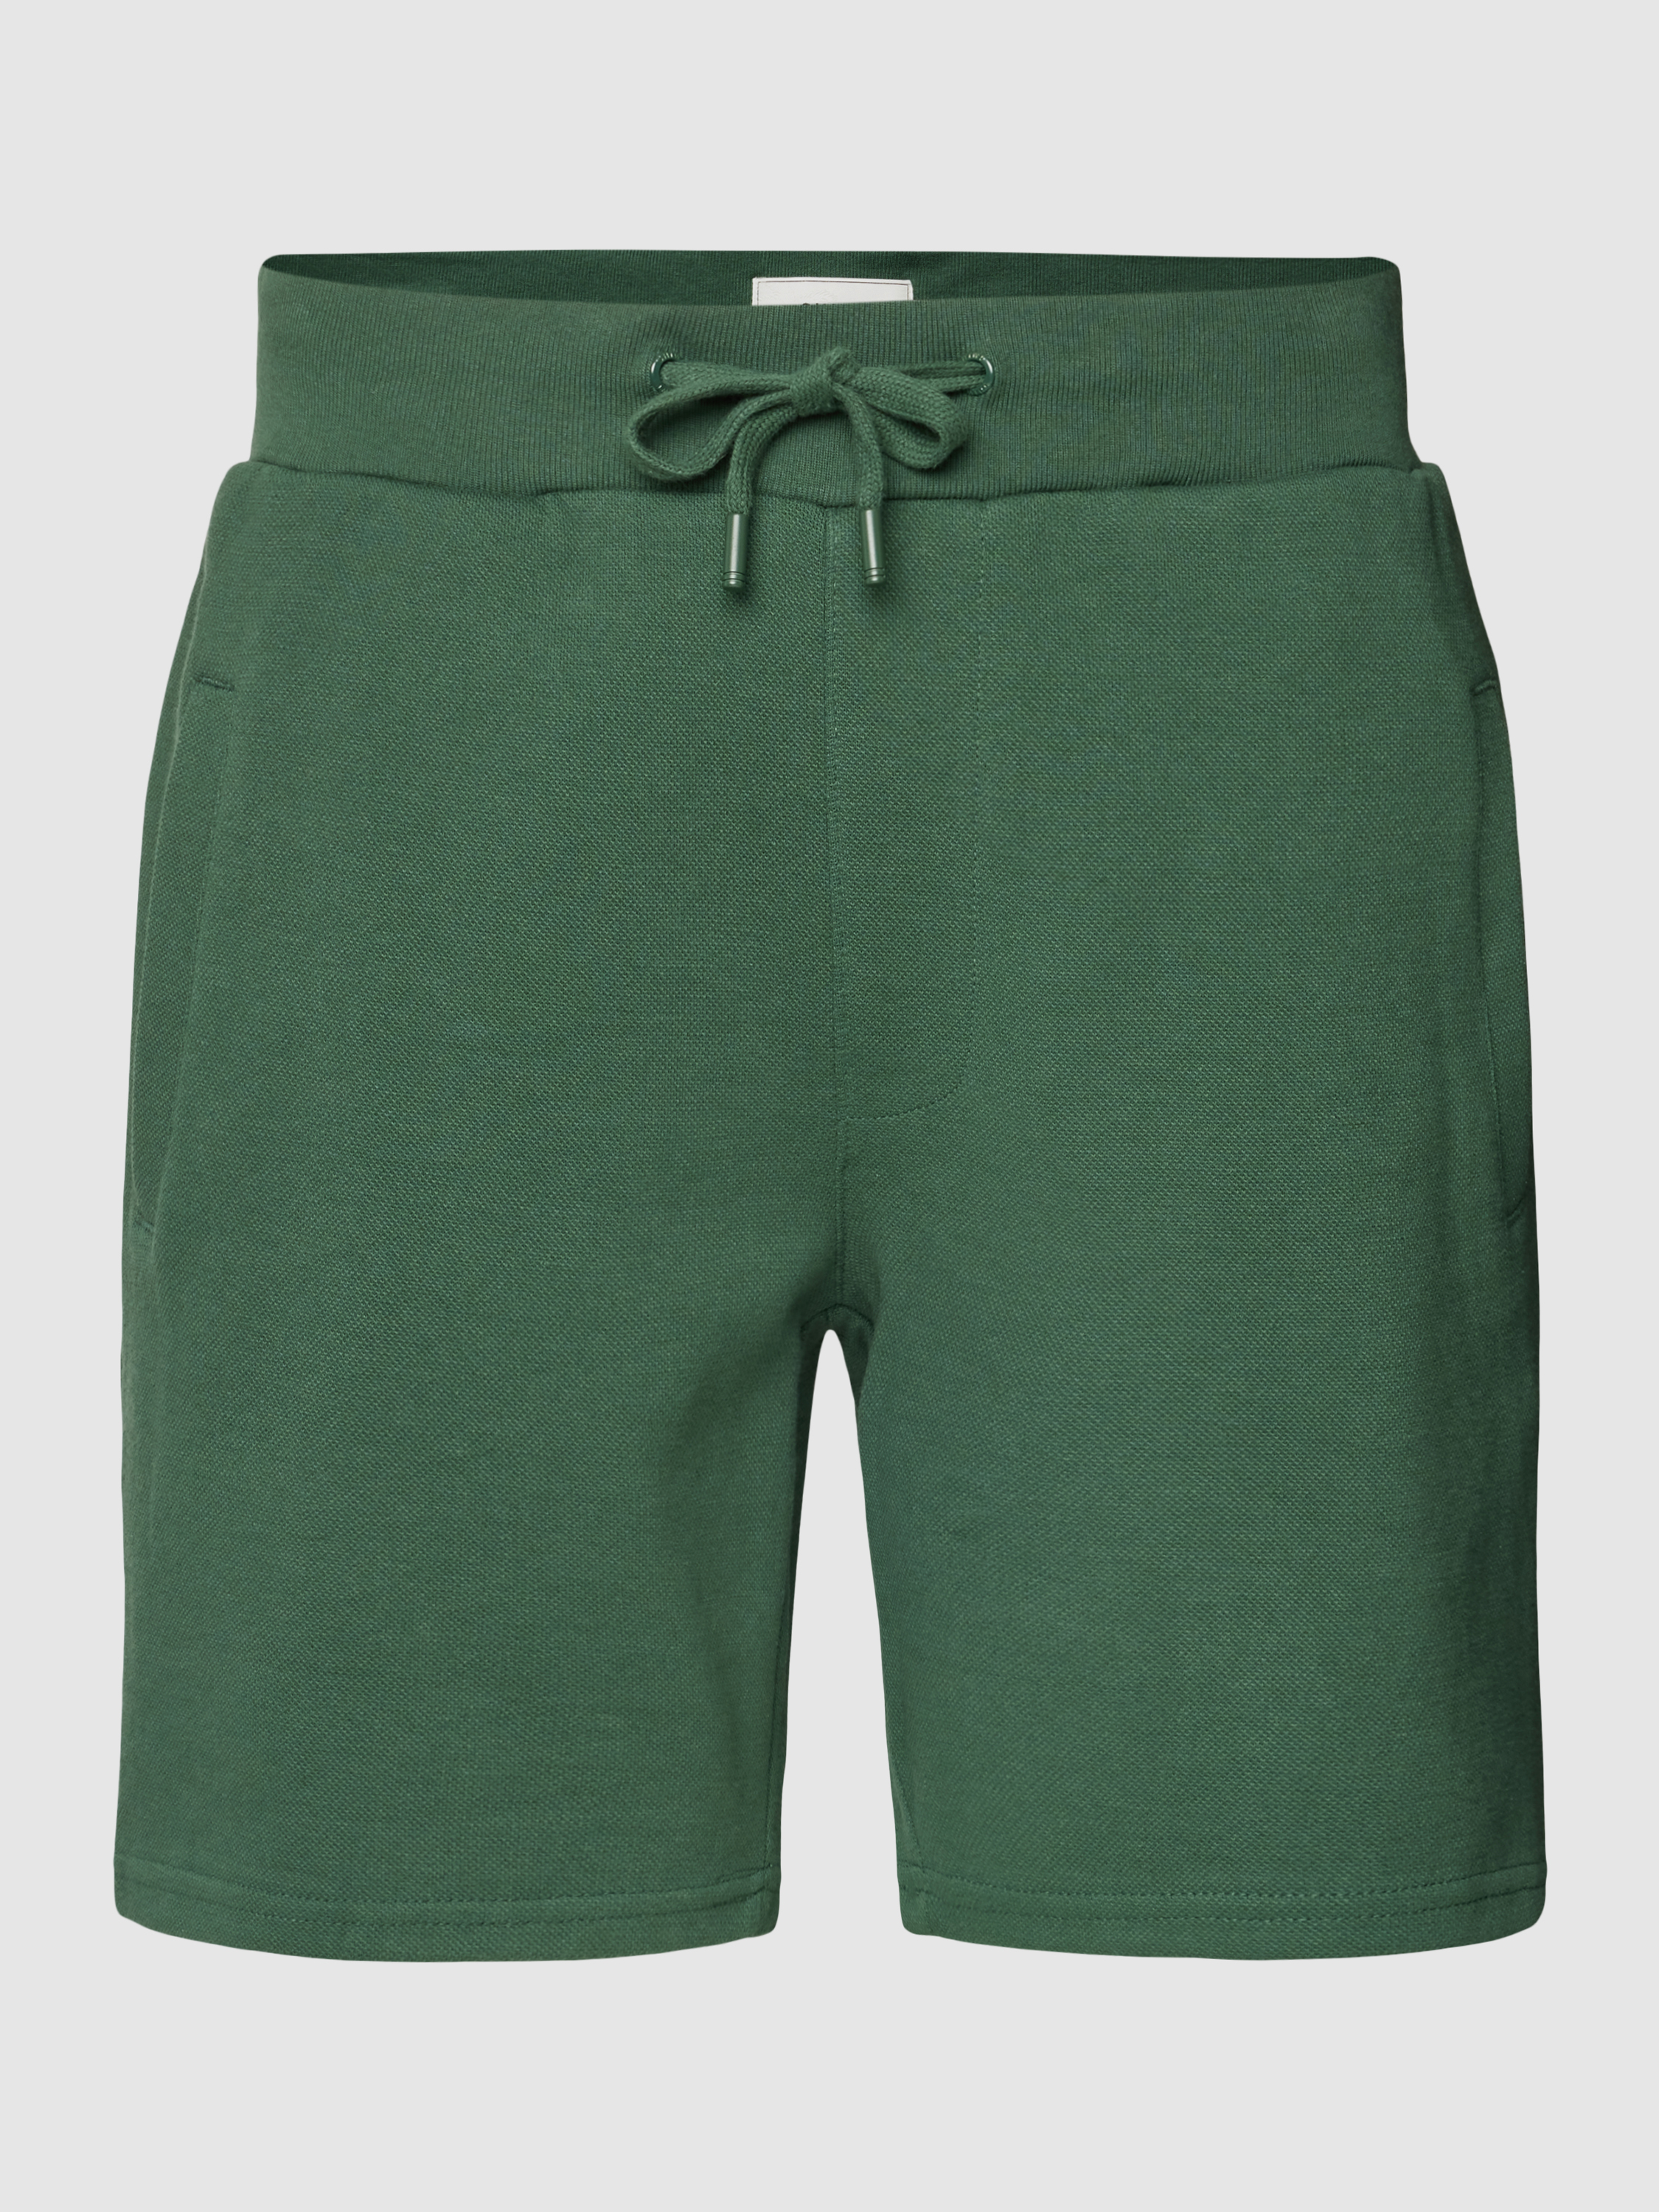 Повседневные шорты мужские Shiwi 1777583 зеленые M (доставка из-за рубежа)